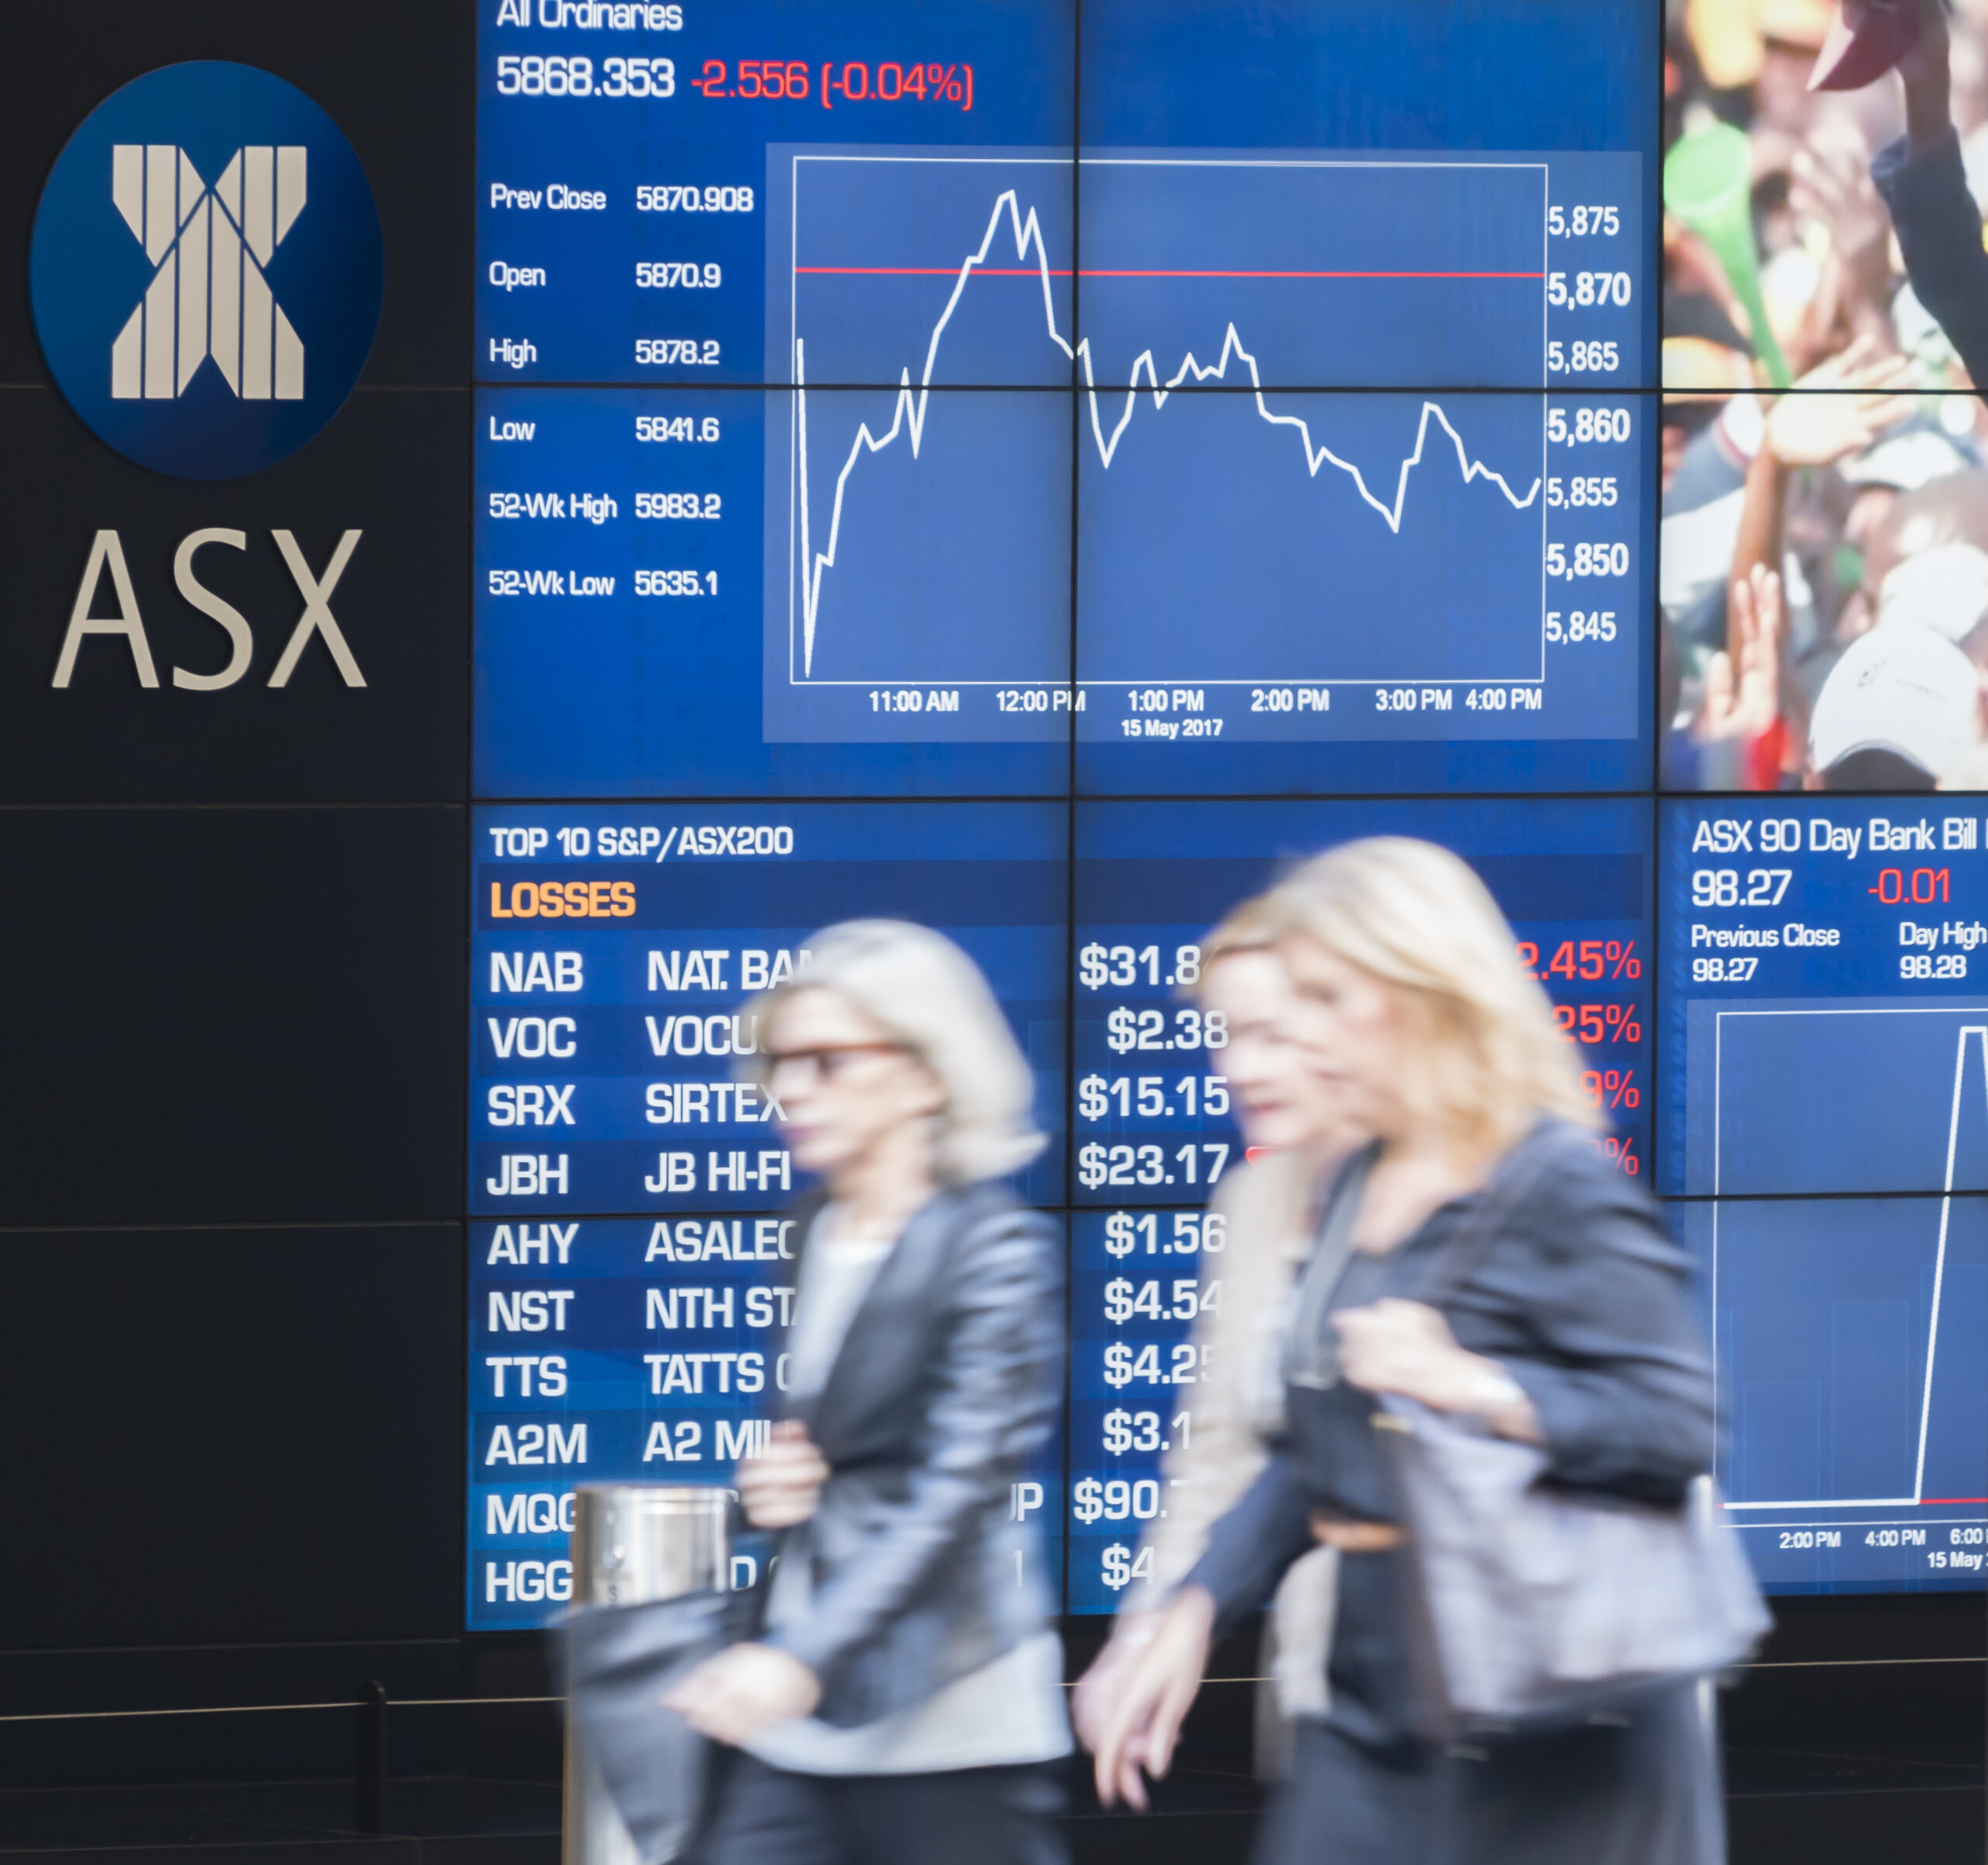 Aussie equities still remain a good long-term bet